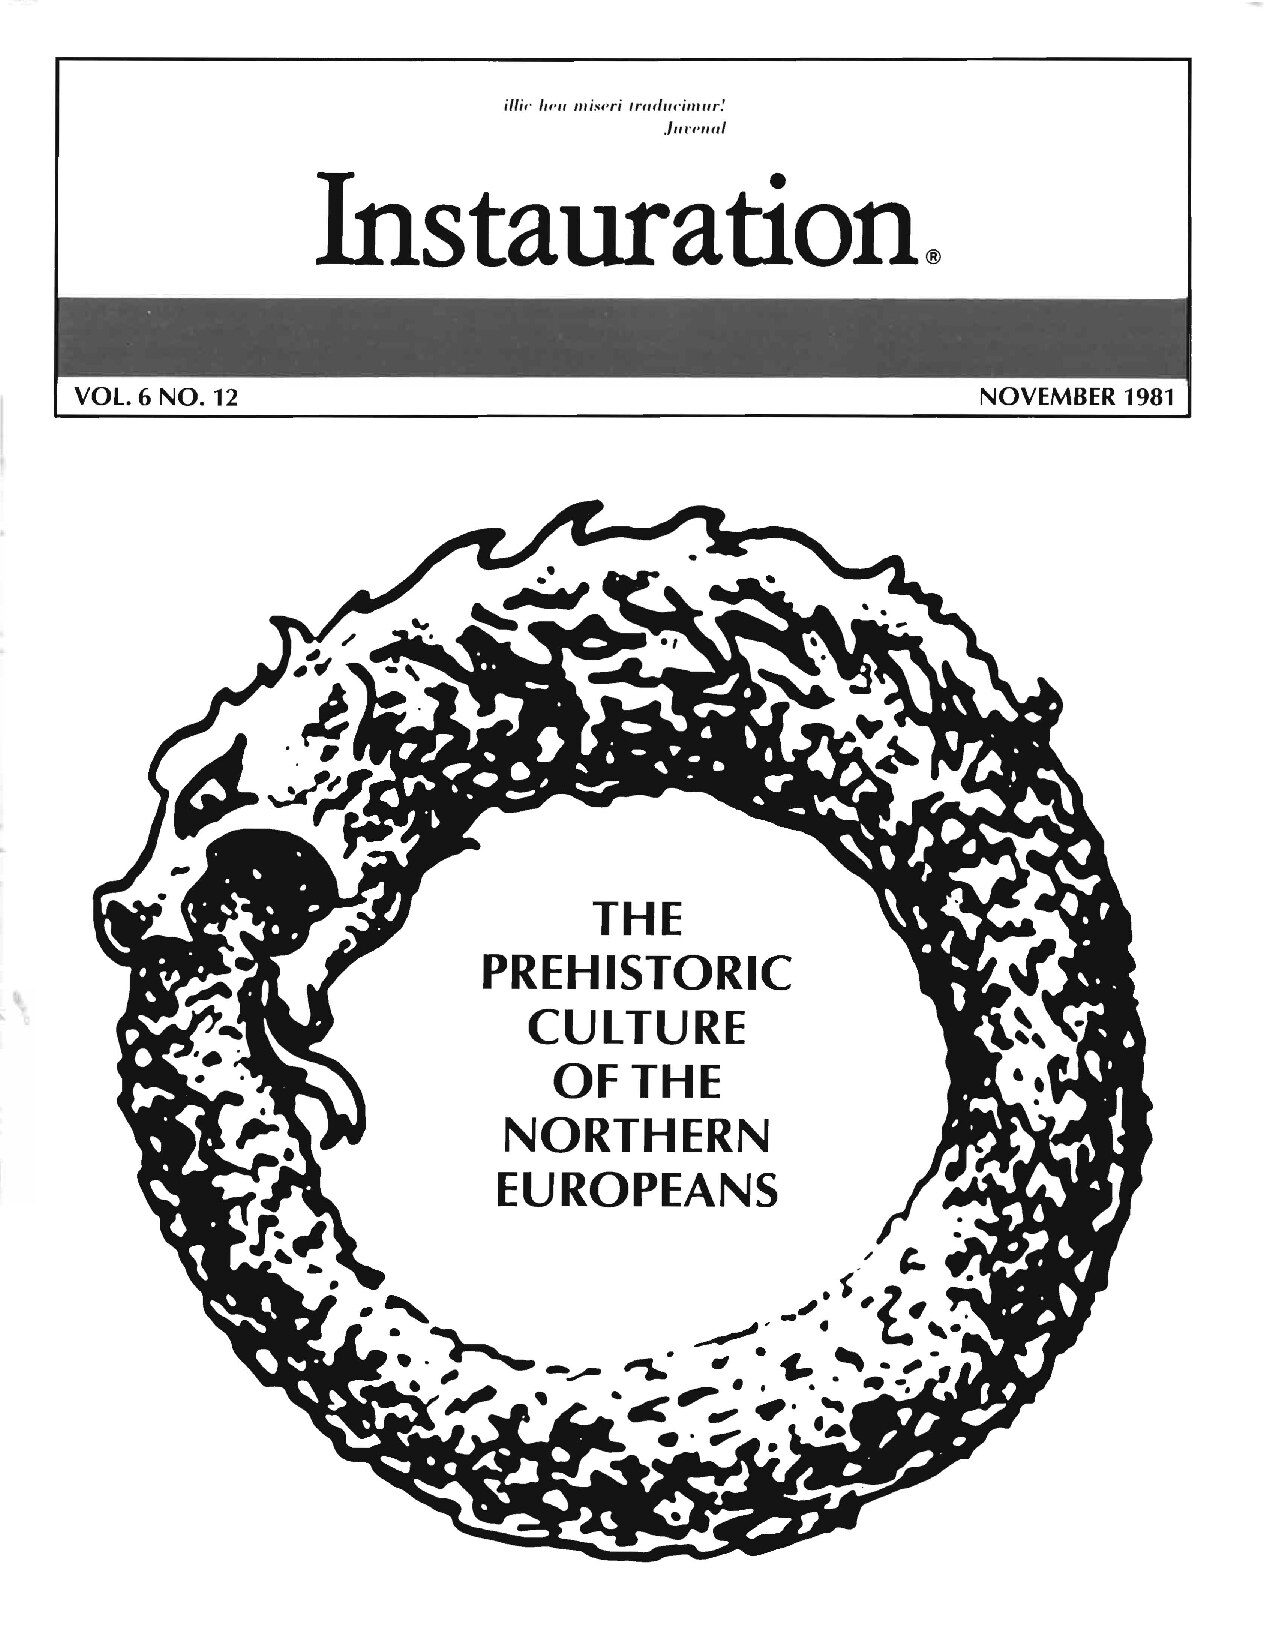 Instauration-1981-11-November-Vol6-No12-pt1